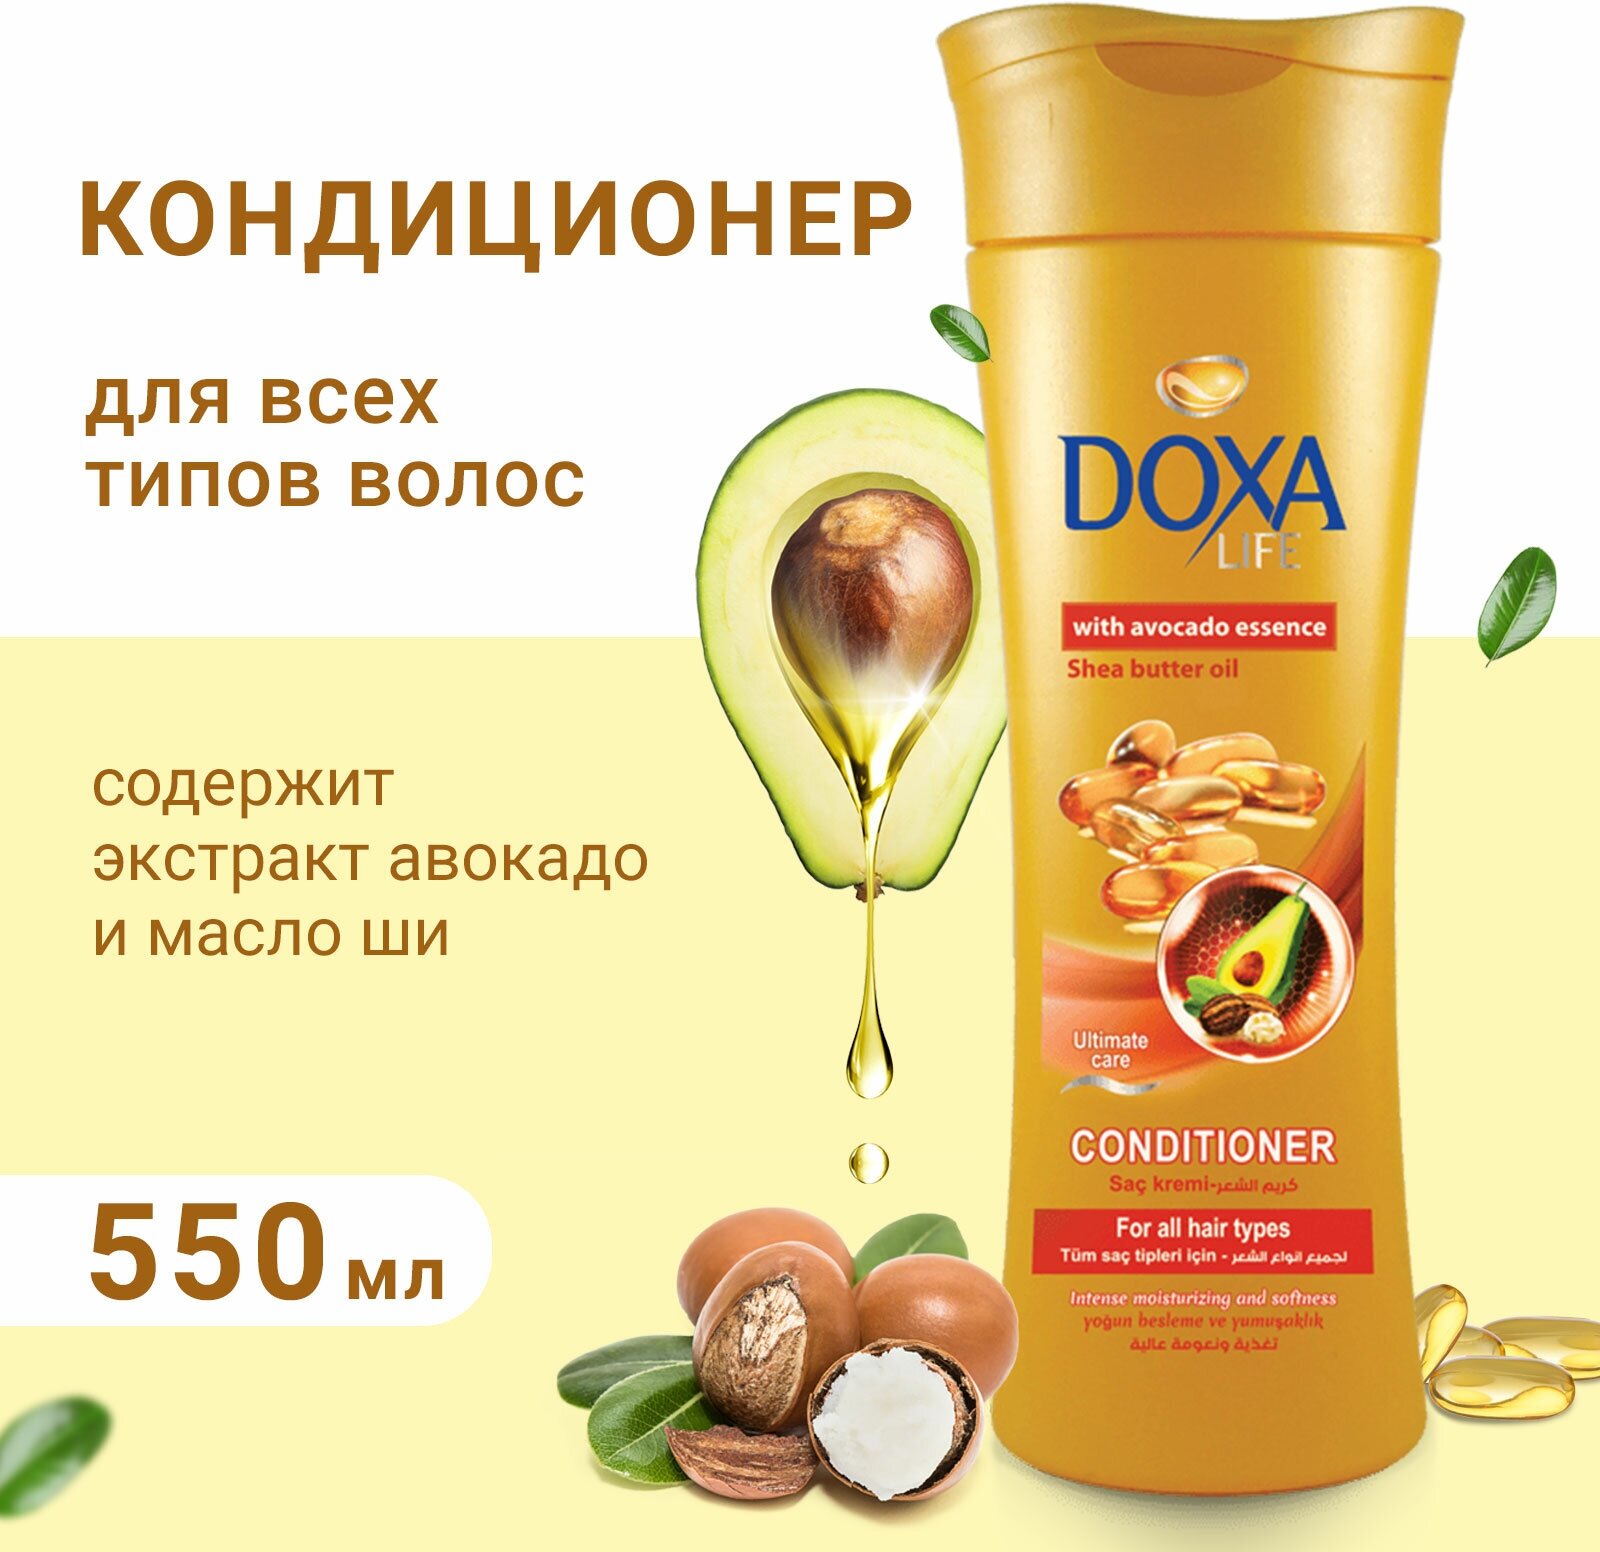 Кондиционер для волос Doxa Life увлажняющий с экстрактом авокадо и маслом ши, 550 мл